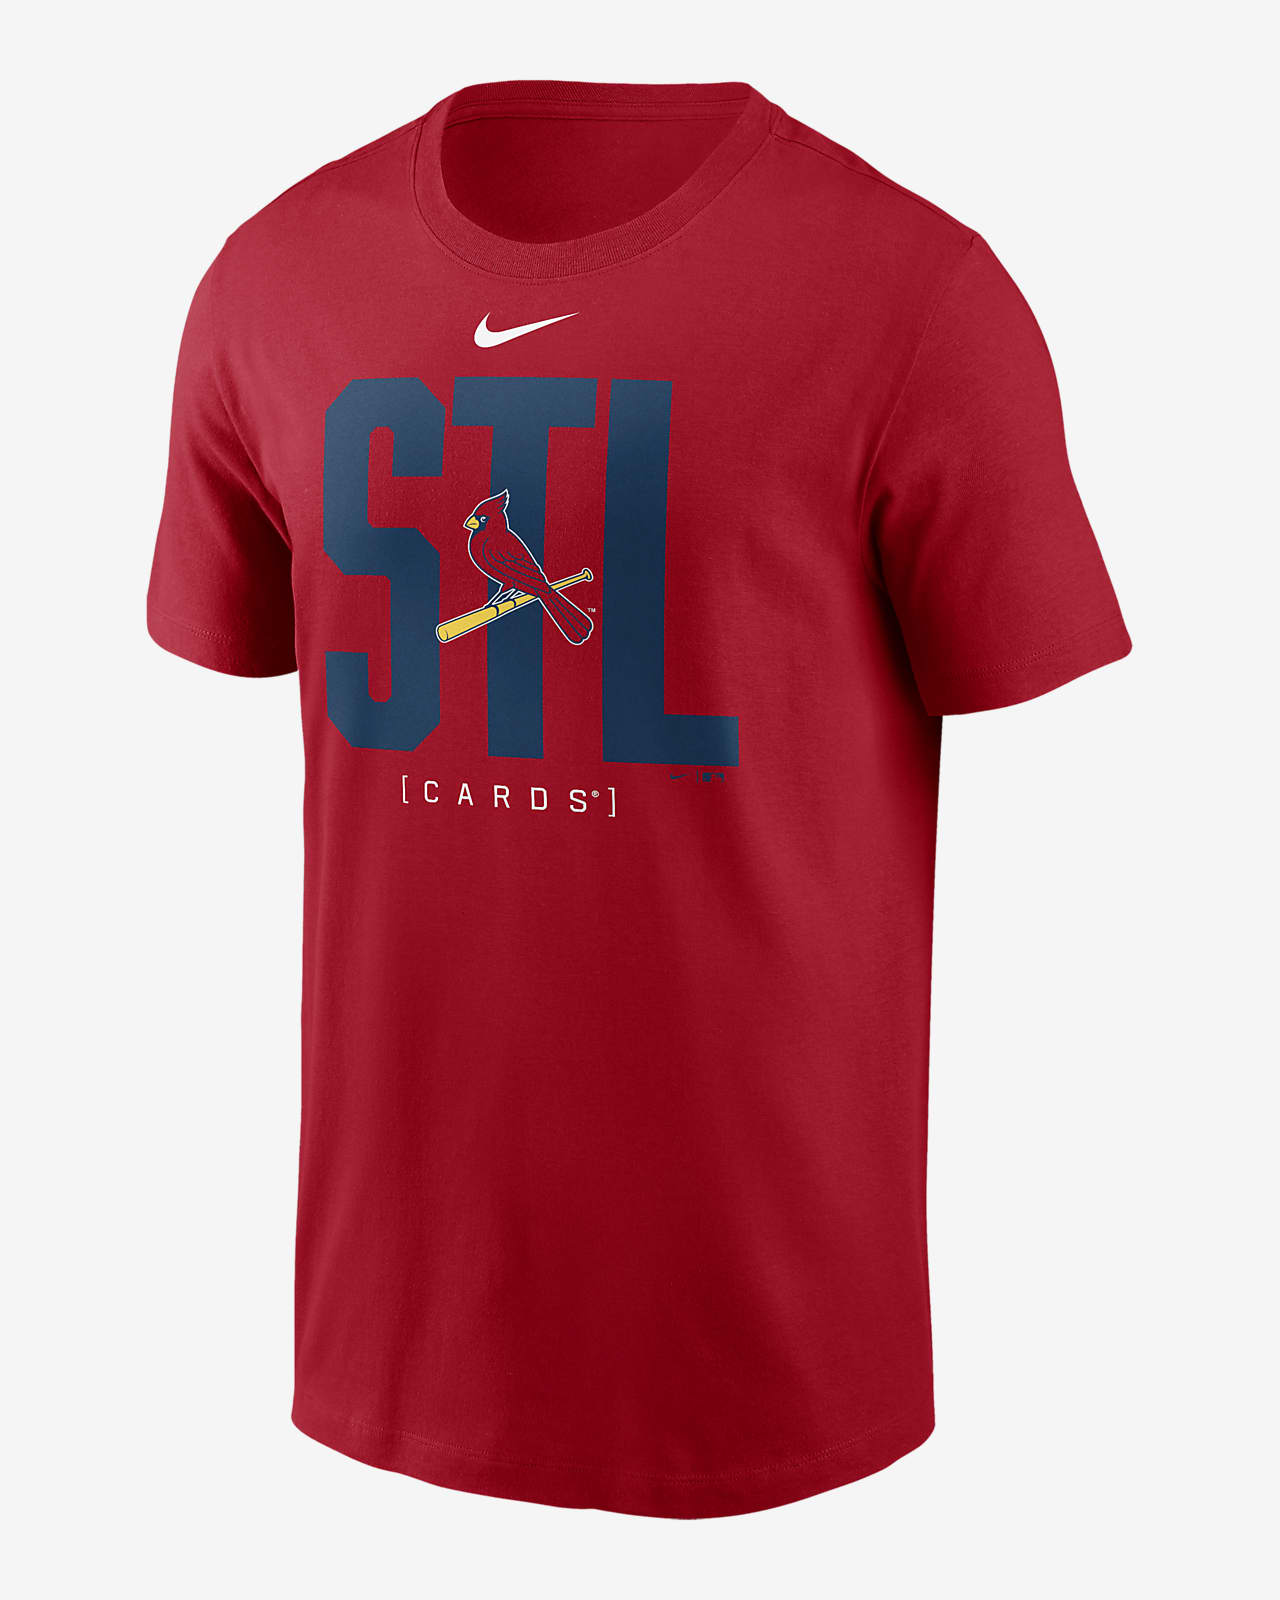 St. Louis Cardinals Team Scoreboard Men's Nike MLB T-Shirt